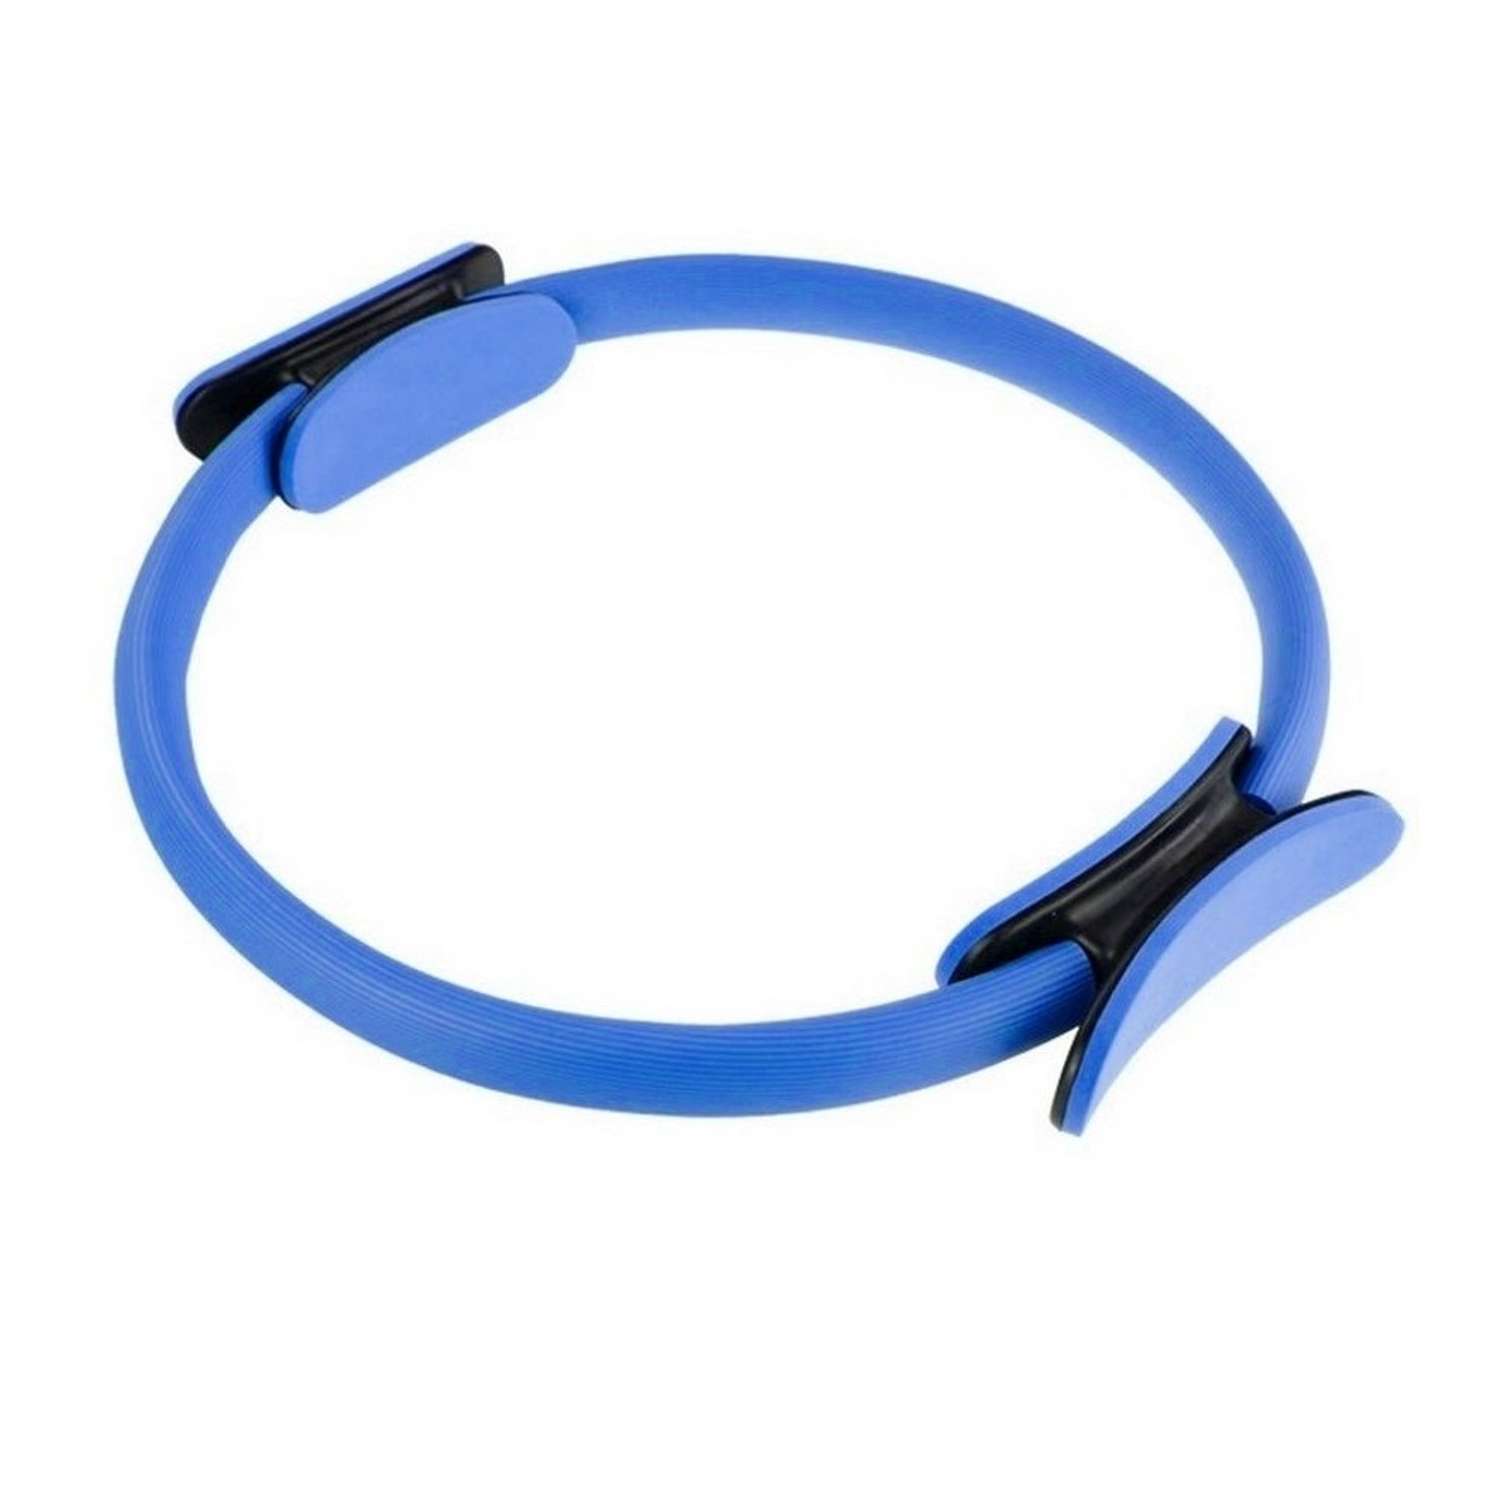 Изотоническое кольцо STRONG BODY обруч для йоги и пилатес d 38 см синее - фото 2